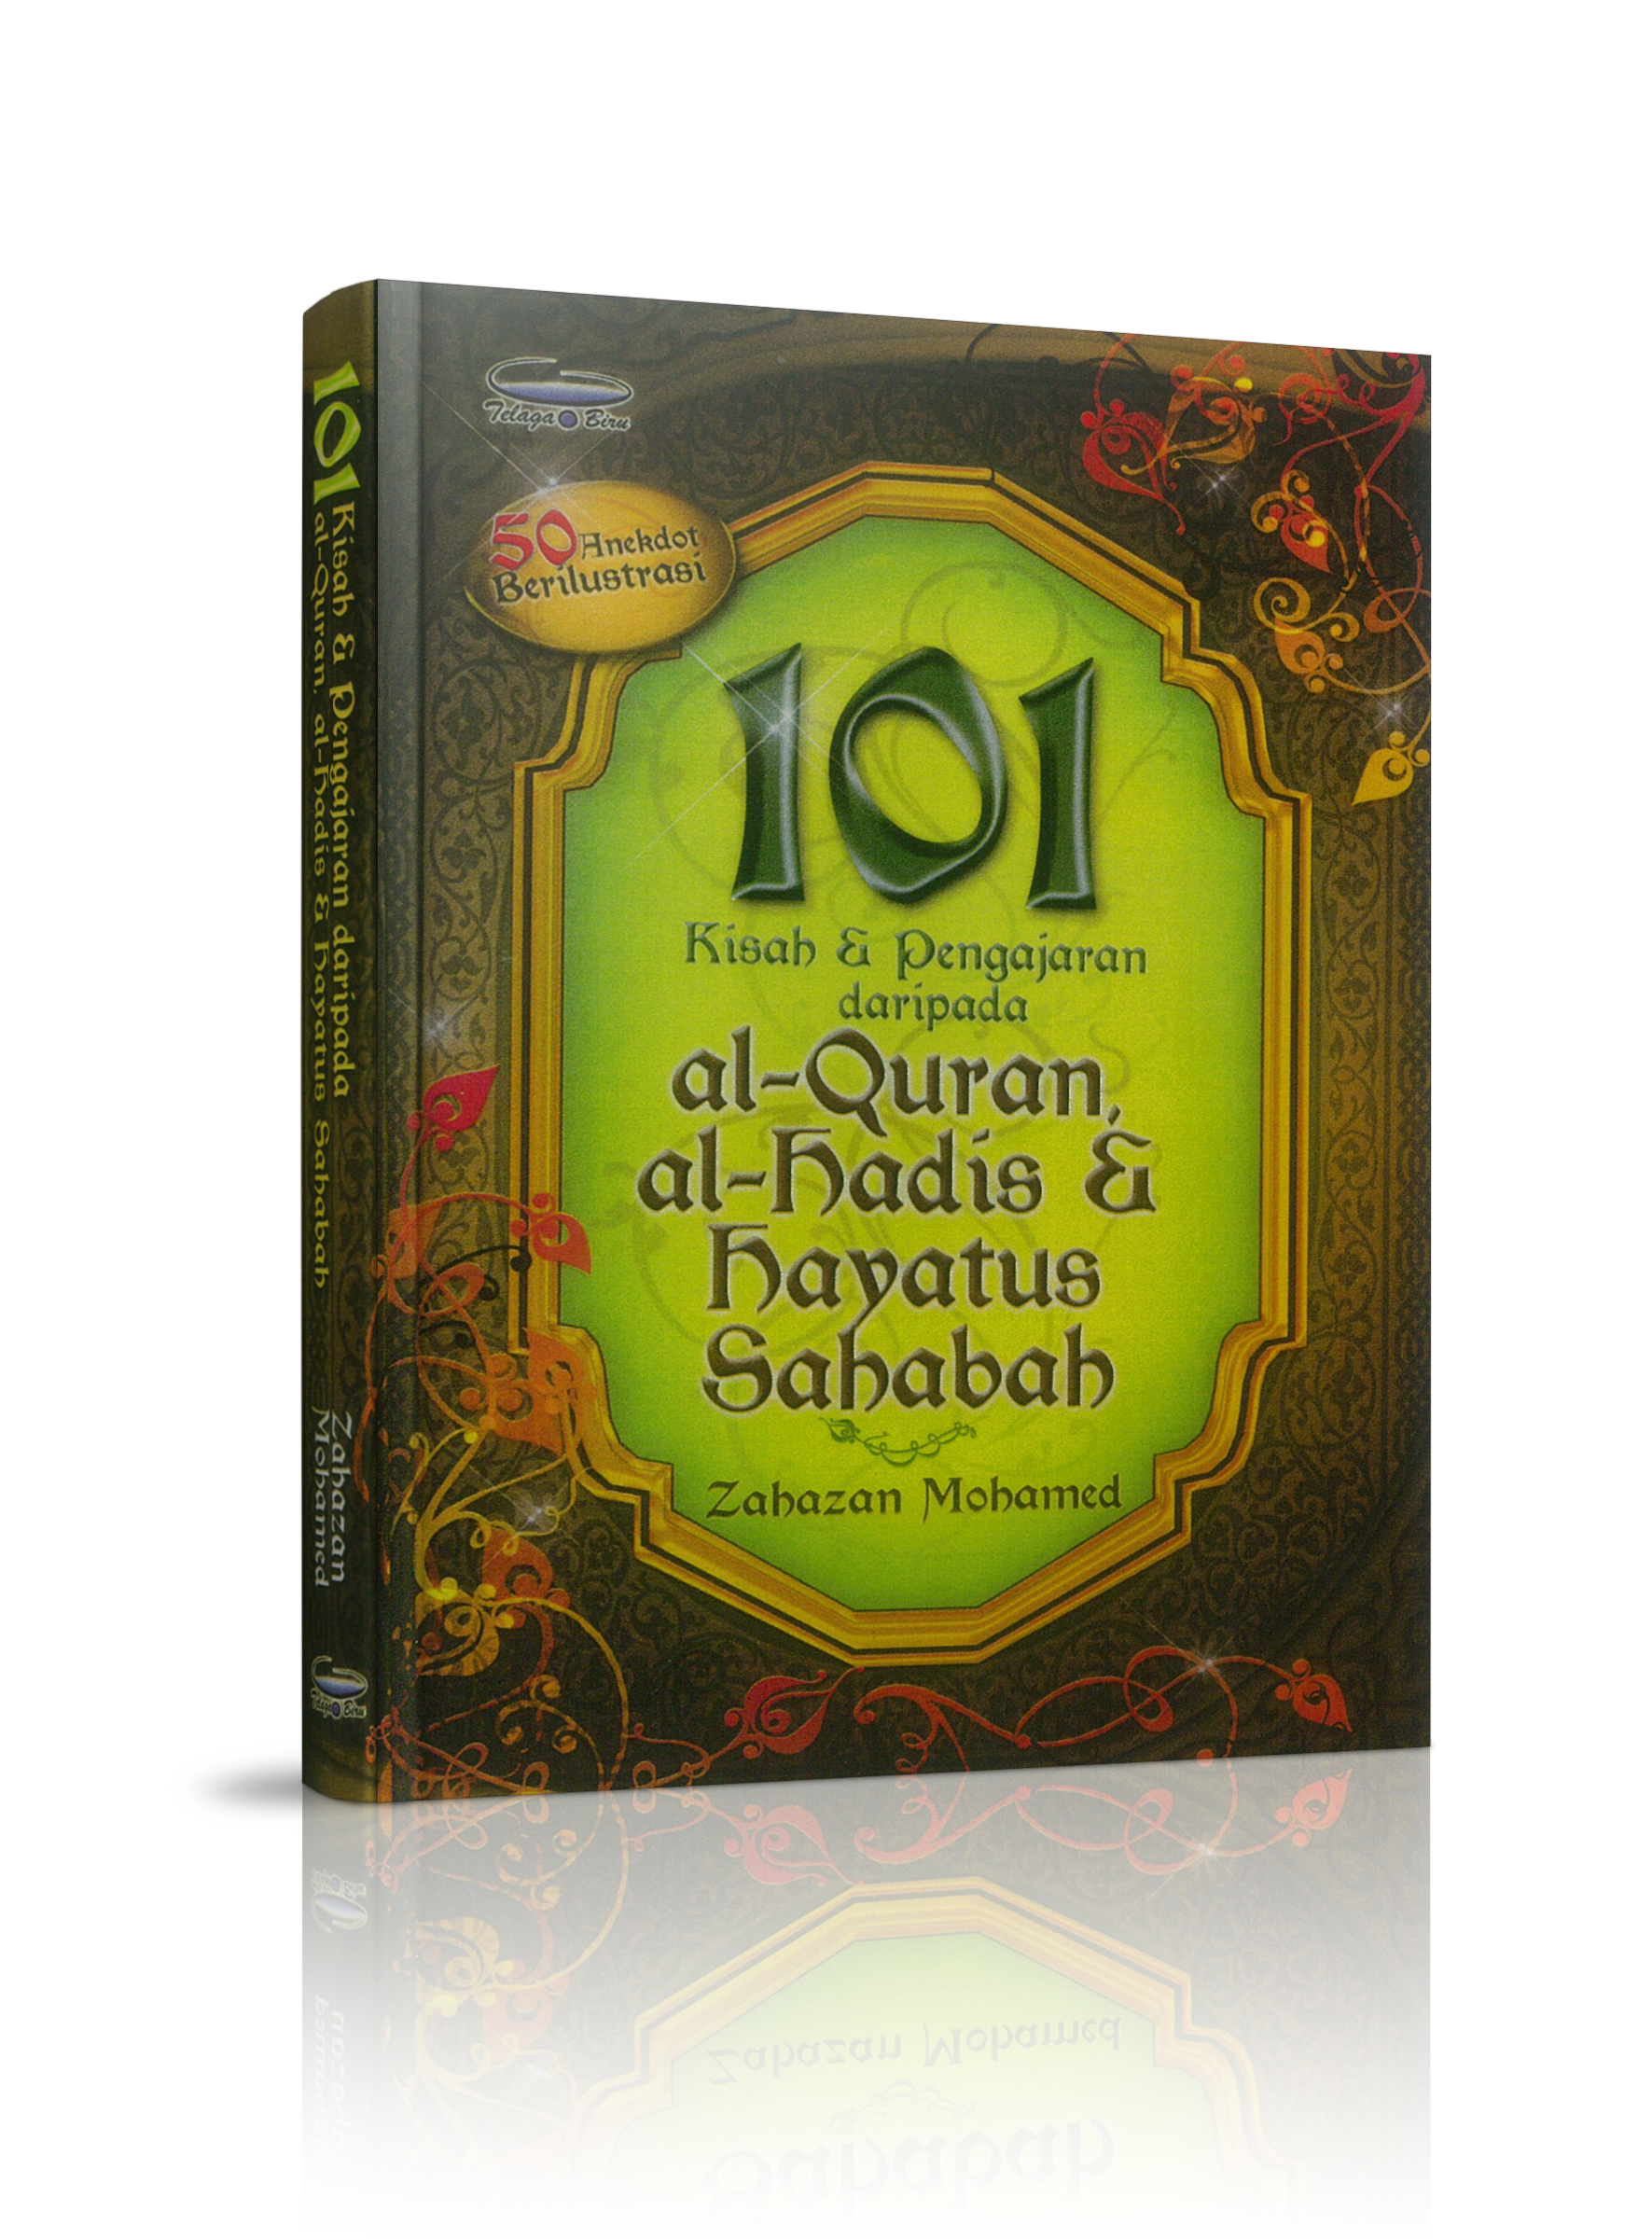 101 Kisah & Pengajaran al-Quran, al-Hadis, & Hayatus Sahabah - (TBBK1062)